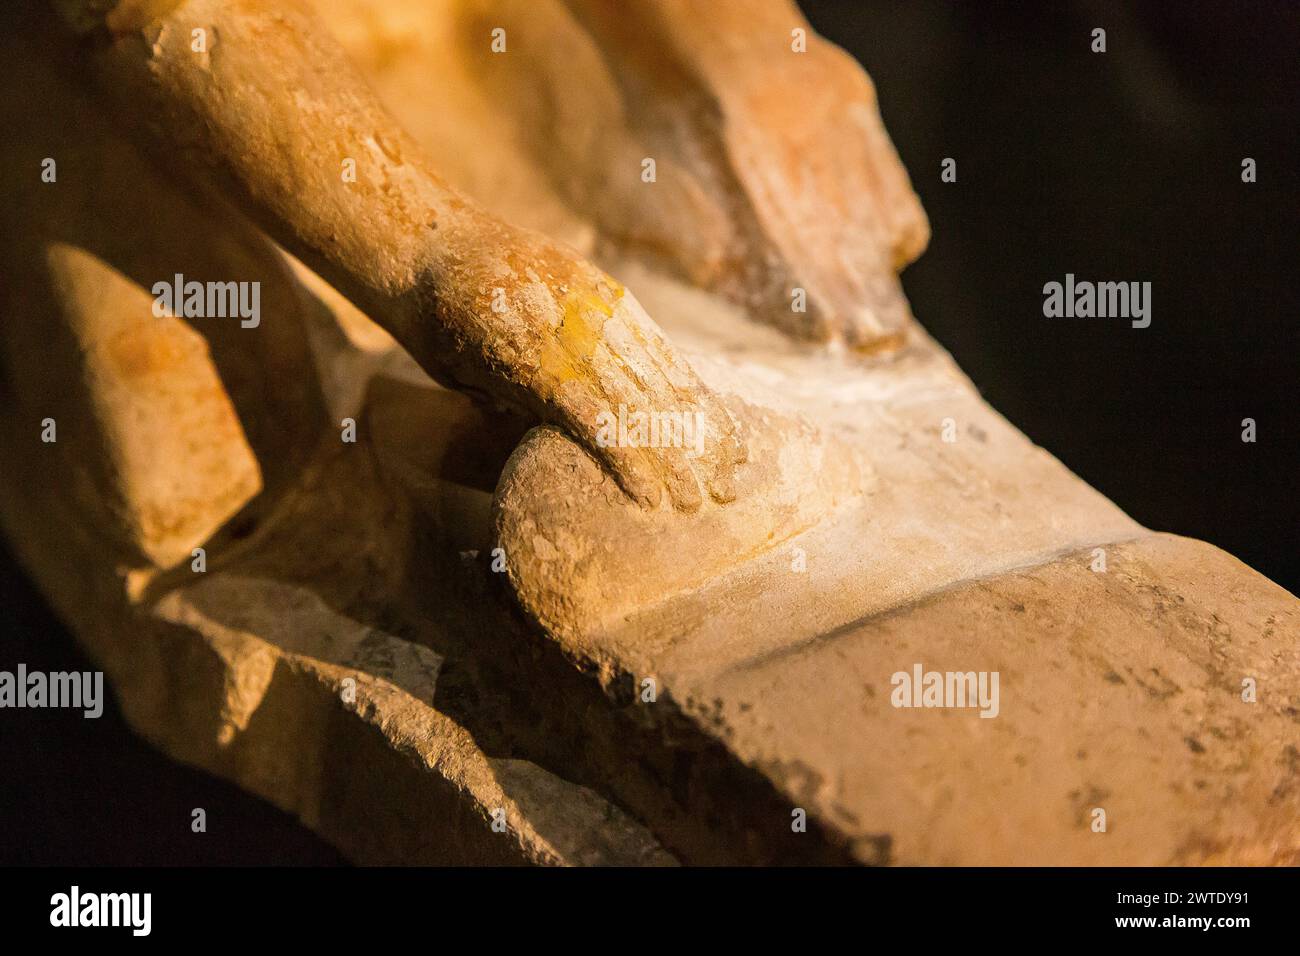 Alexandria National Museum, Modellstatuette eines Dieners, der Teig knete, um Brot zu machen. Mit der rechten Hand kratzt er mit einem Werkzeug. Stockfoto